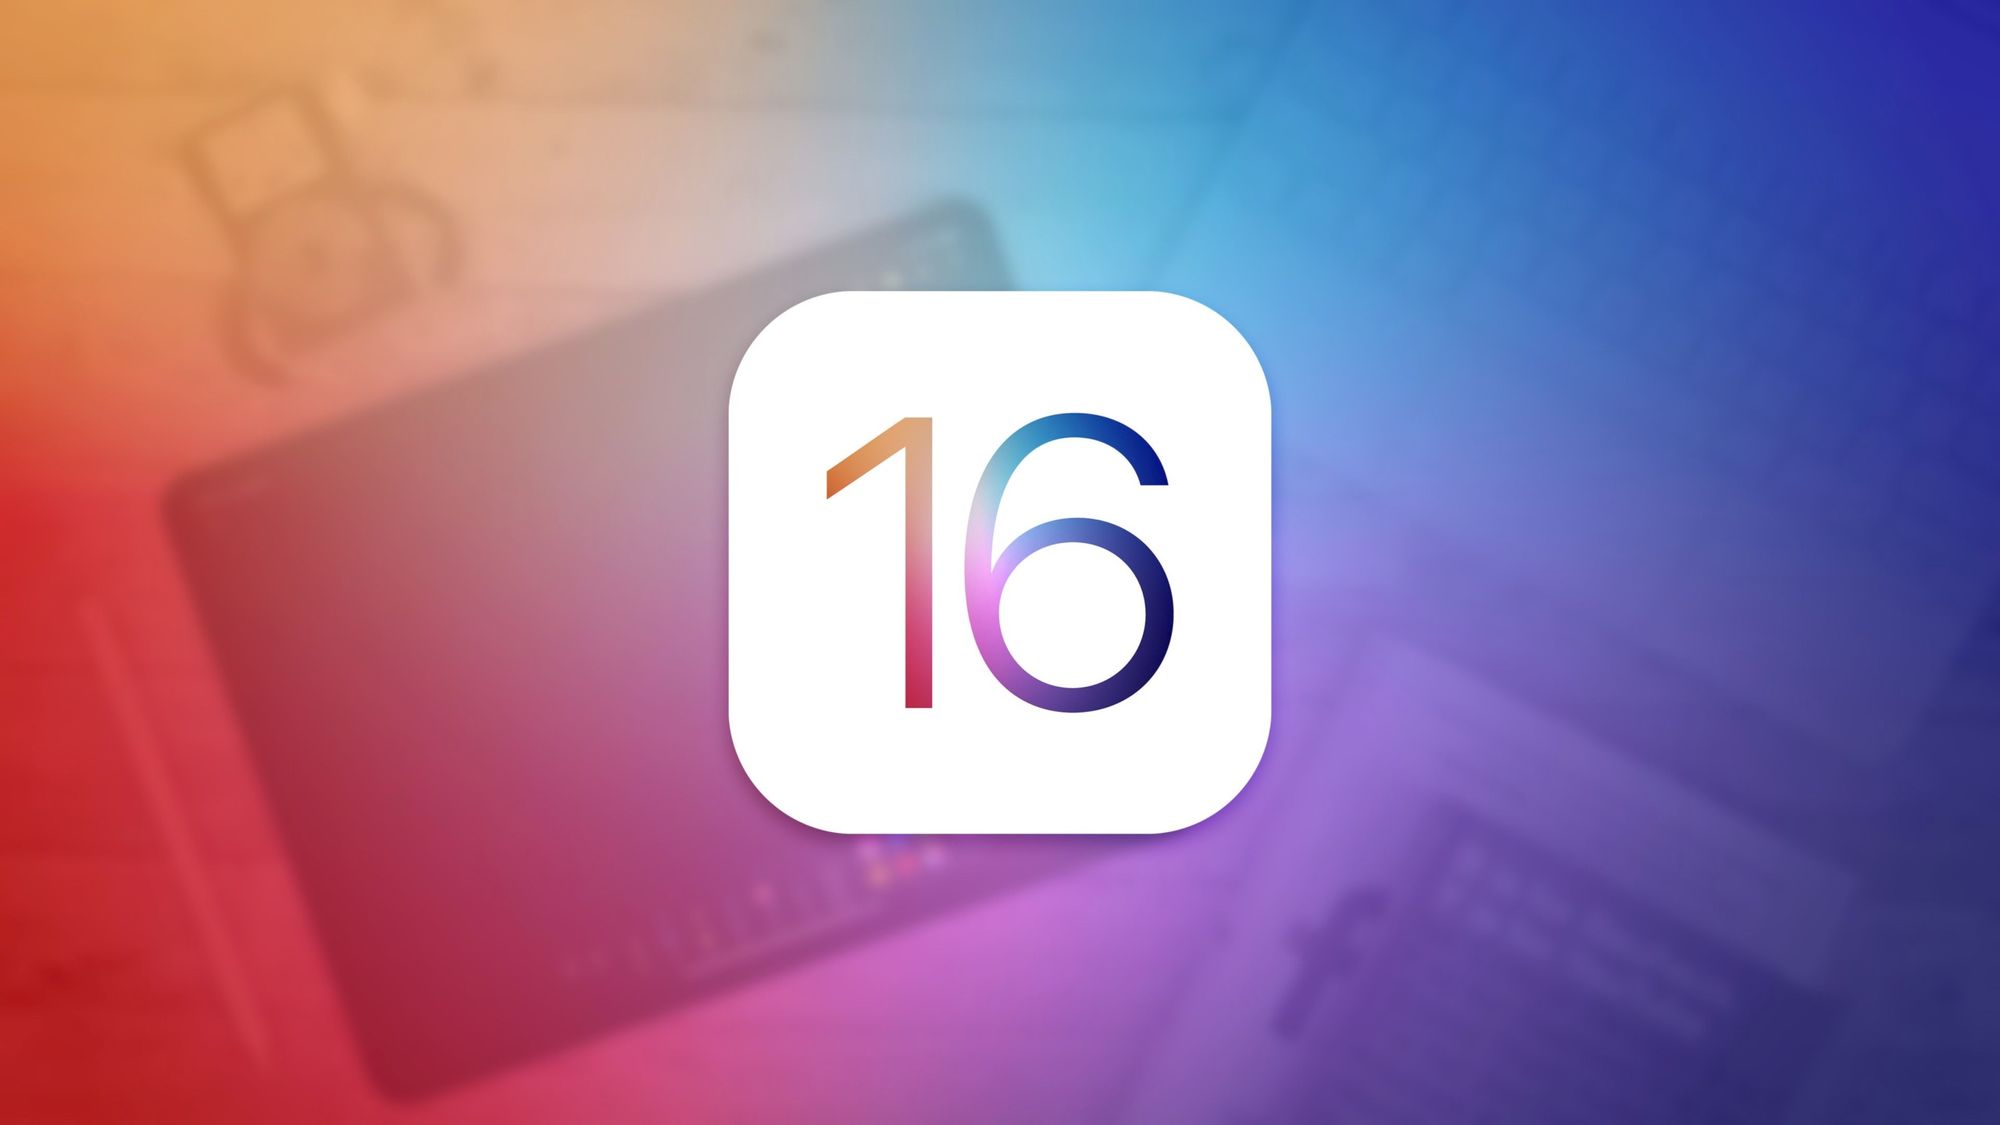 iOS 16 упрощает удаление дубликатов фотографий, засоряющих библиотеку